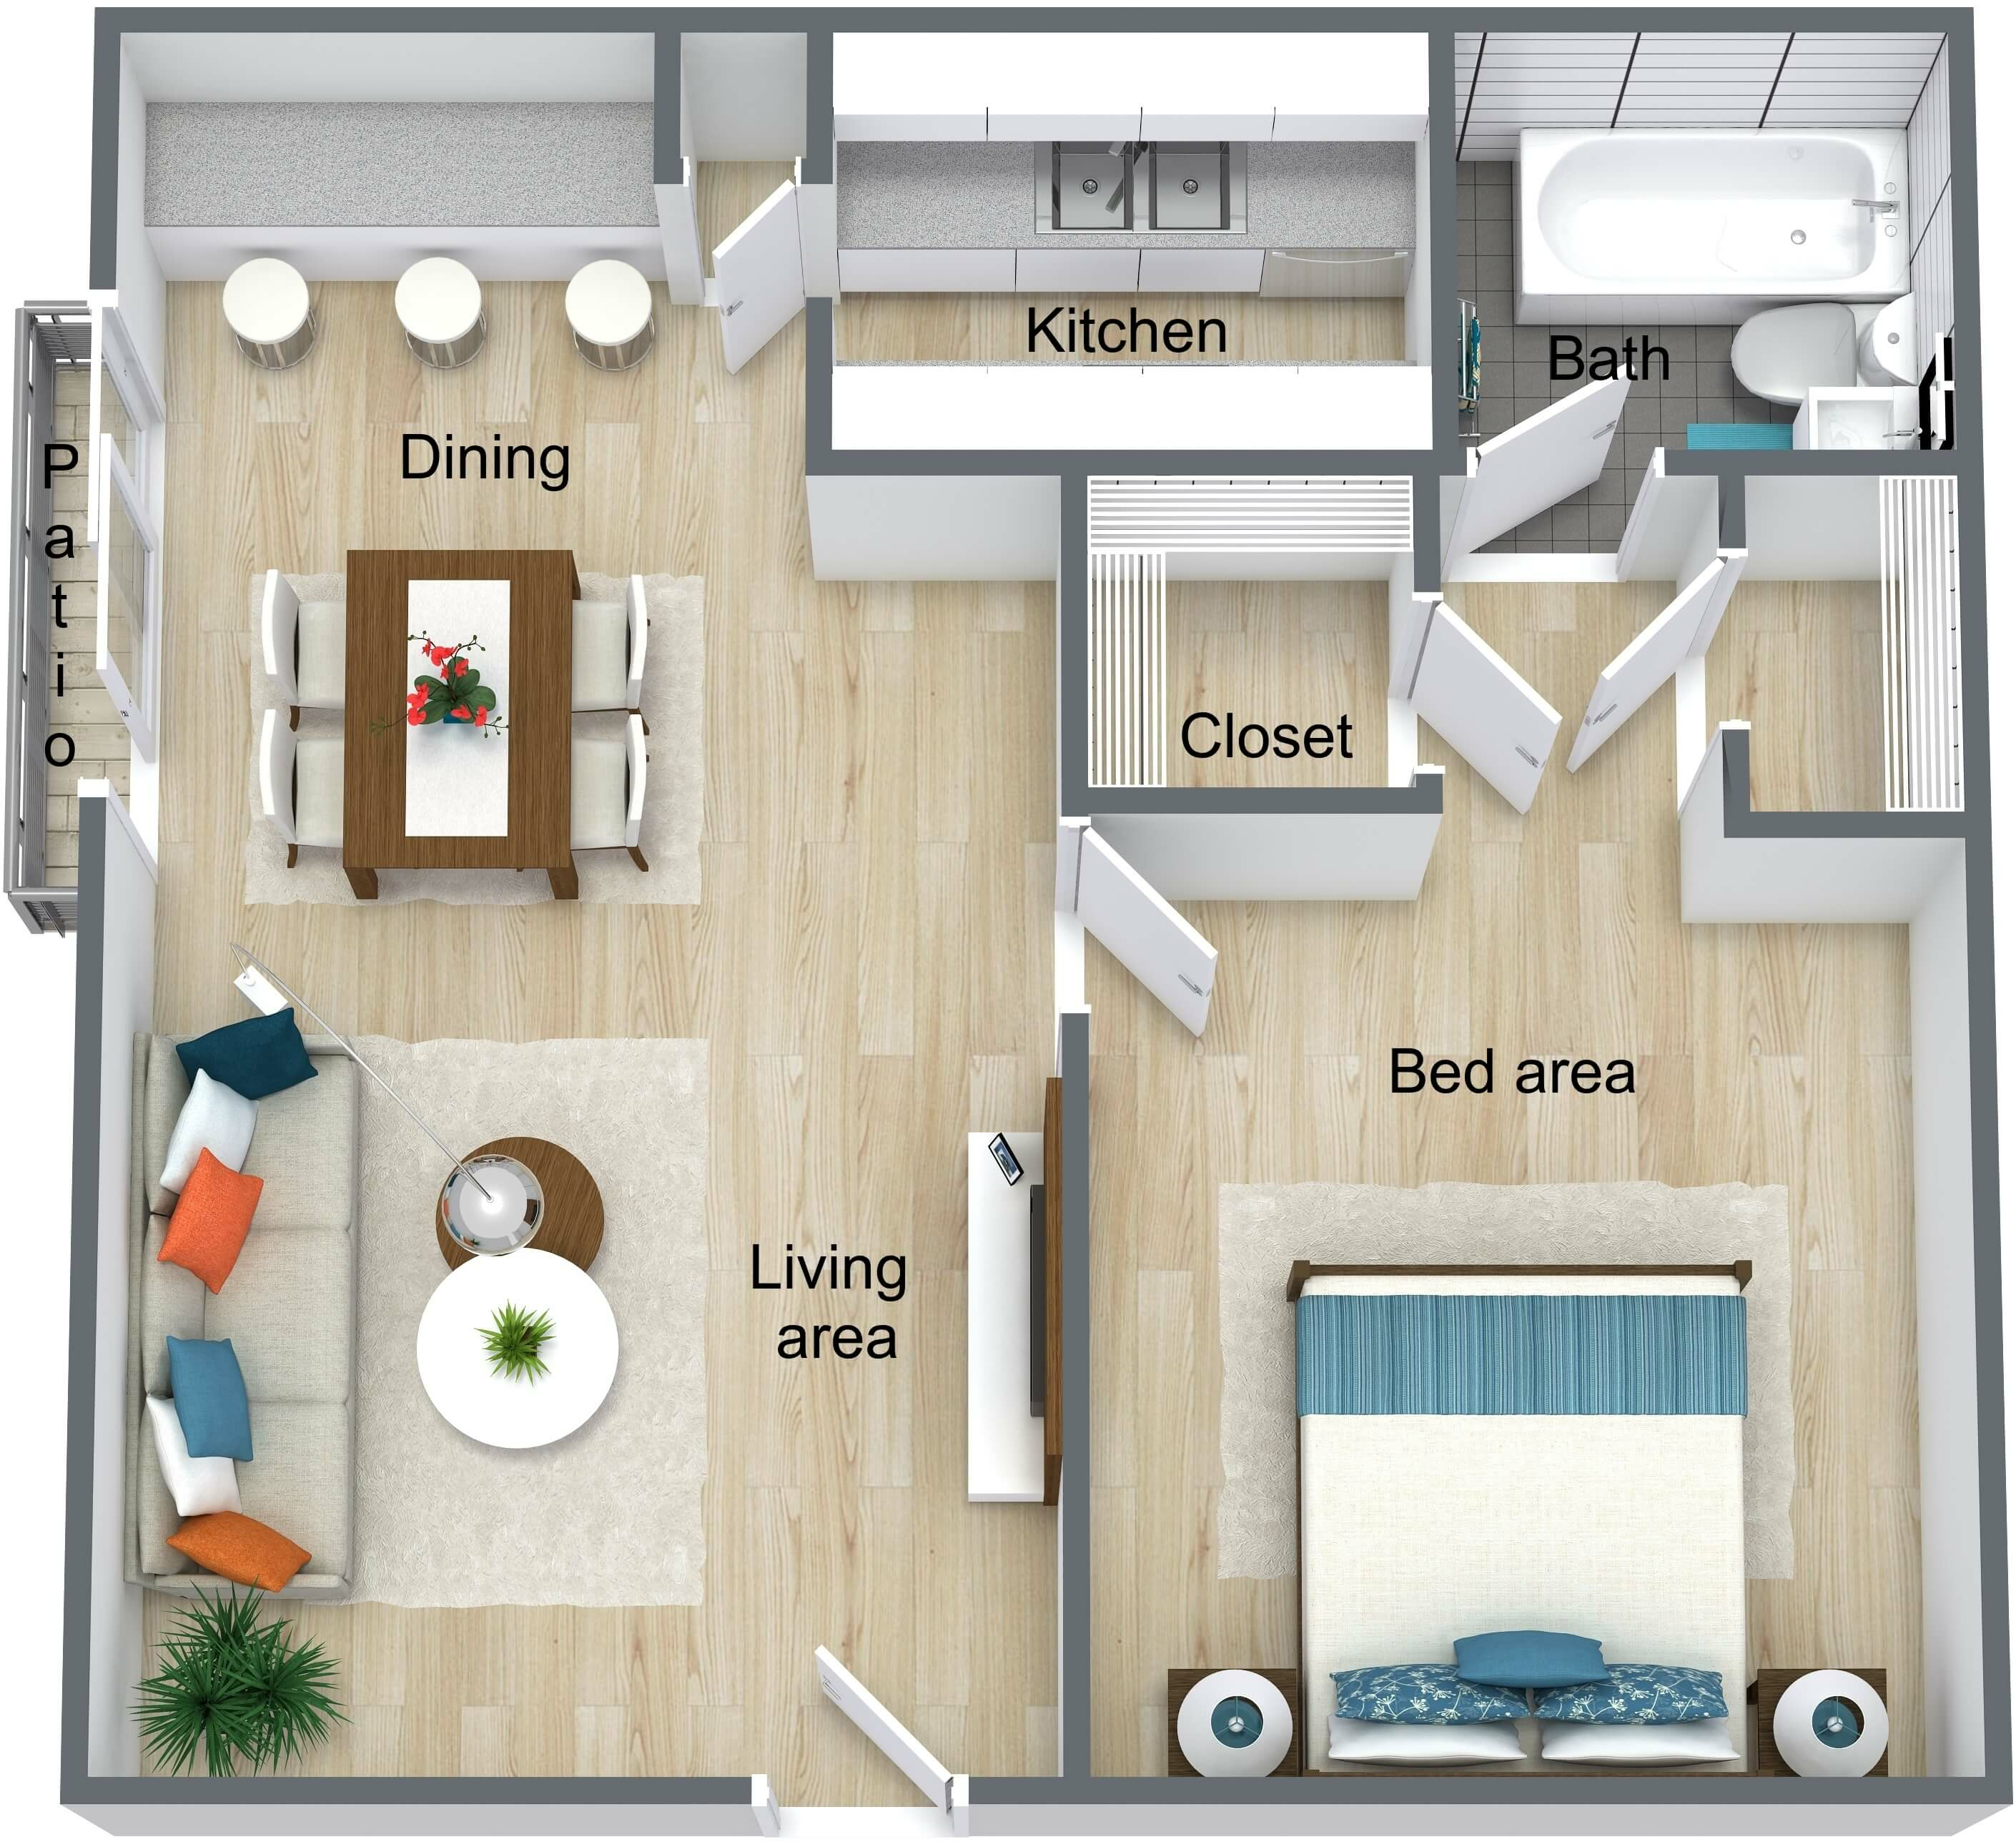 Wymore Grove Apts - Efficiency 530 sf - 3D Floor Plan (3).jpeg